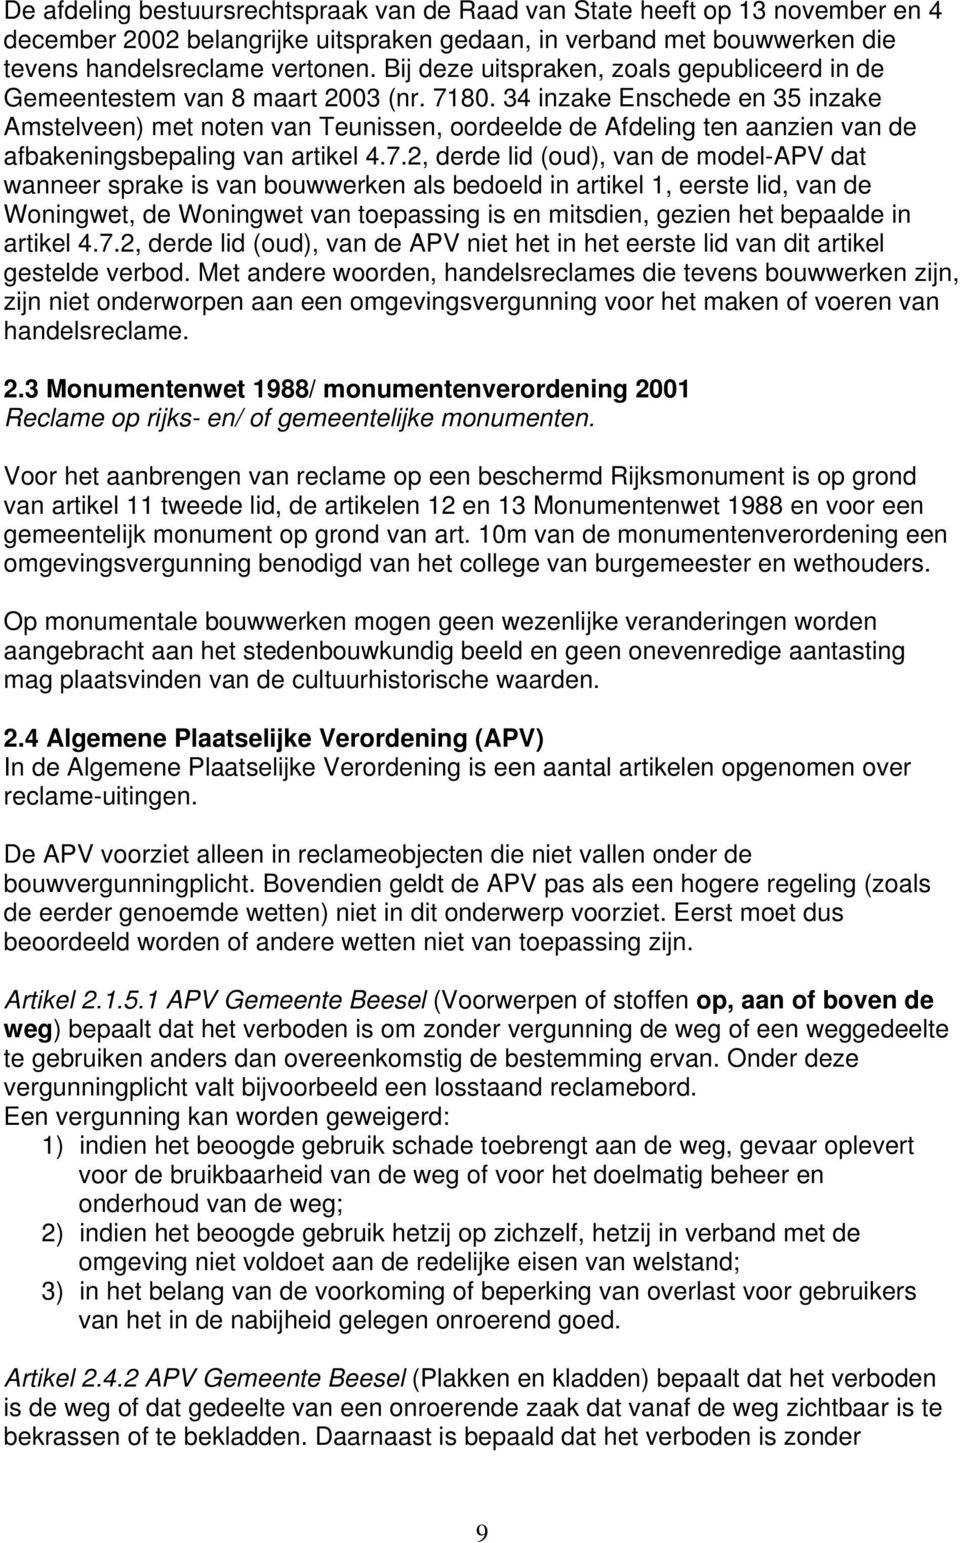 34 inzake Enschede en 35 inzake Amstelveen) met noten van Teunissen, oordeelde de Afdeling ten aanzien van de afbakeningsbepaling van artikel 4.7.